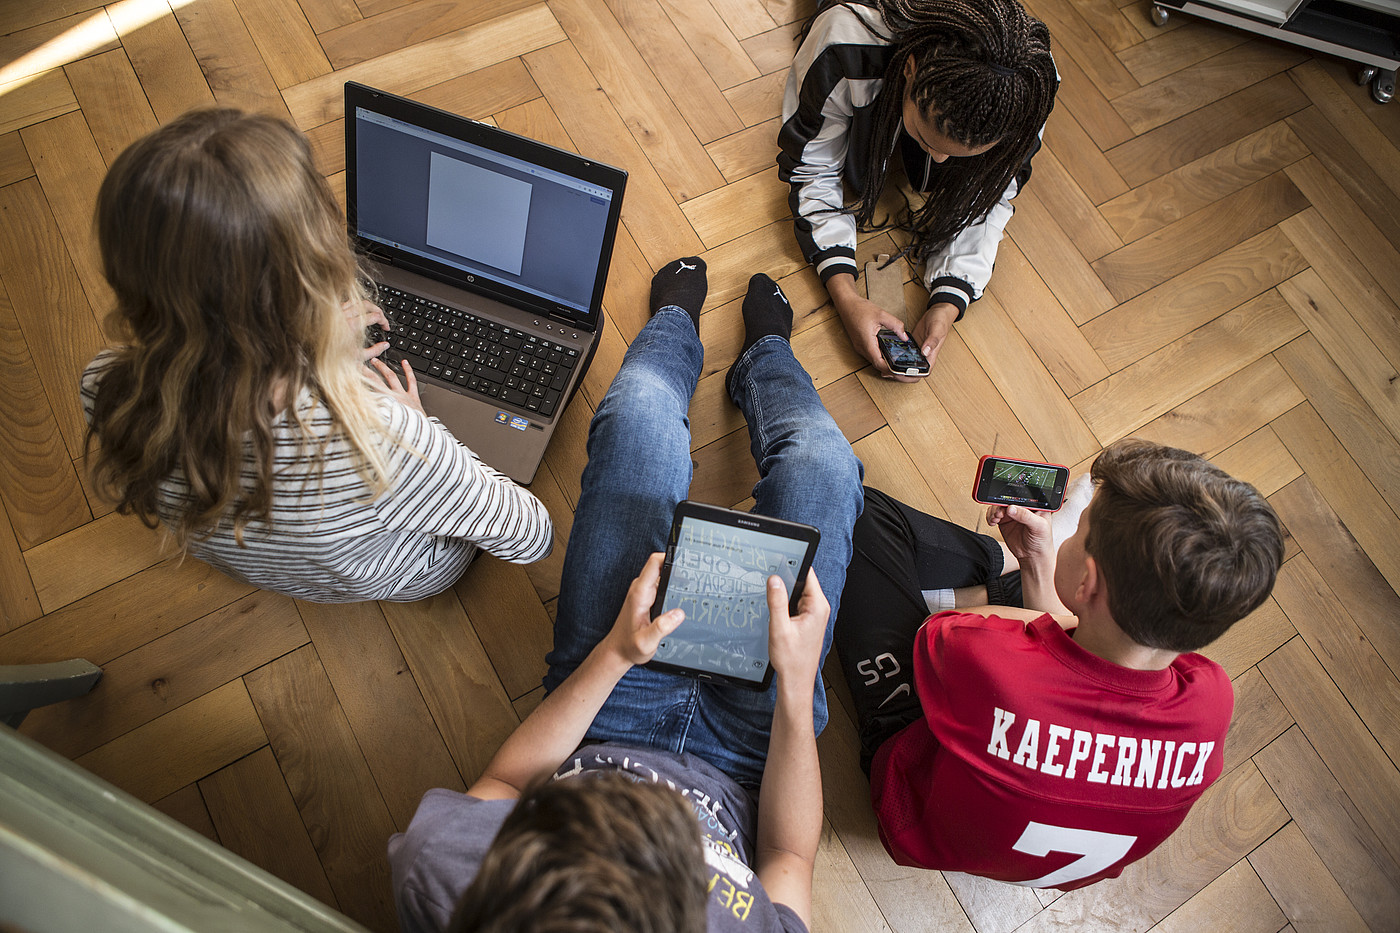 4 Jugendliche die auf dem Boden sitzen oder liegen und alle an einem Laptop, auf einem Tablet oder an einem Smartphone sind.